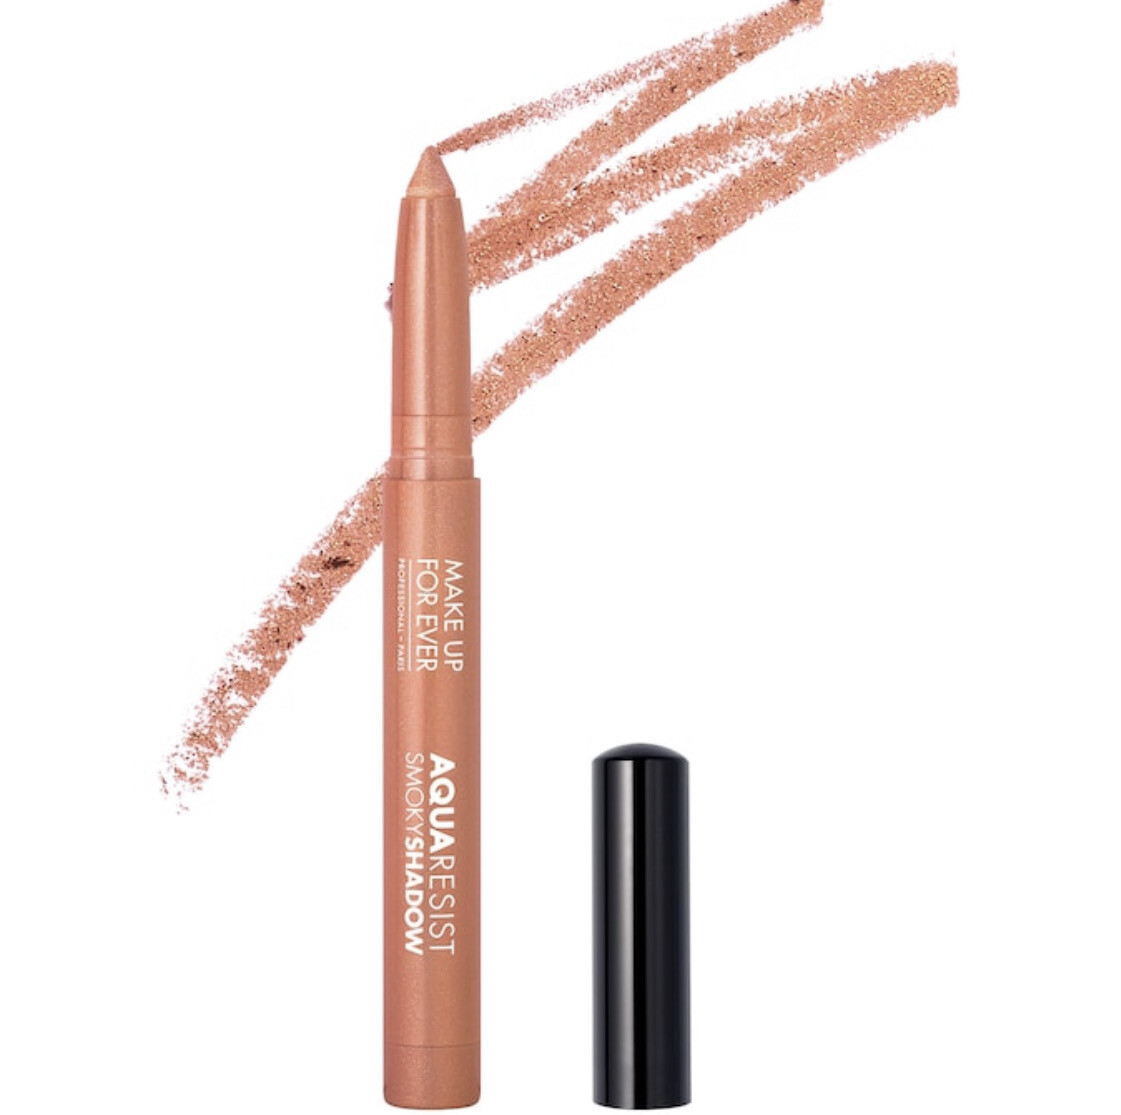 Make Up For Ever - Aqua Resist Smoky Eyeshadow Stick | 15 Quartz - rose gold